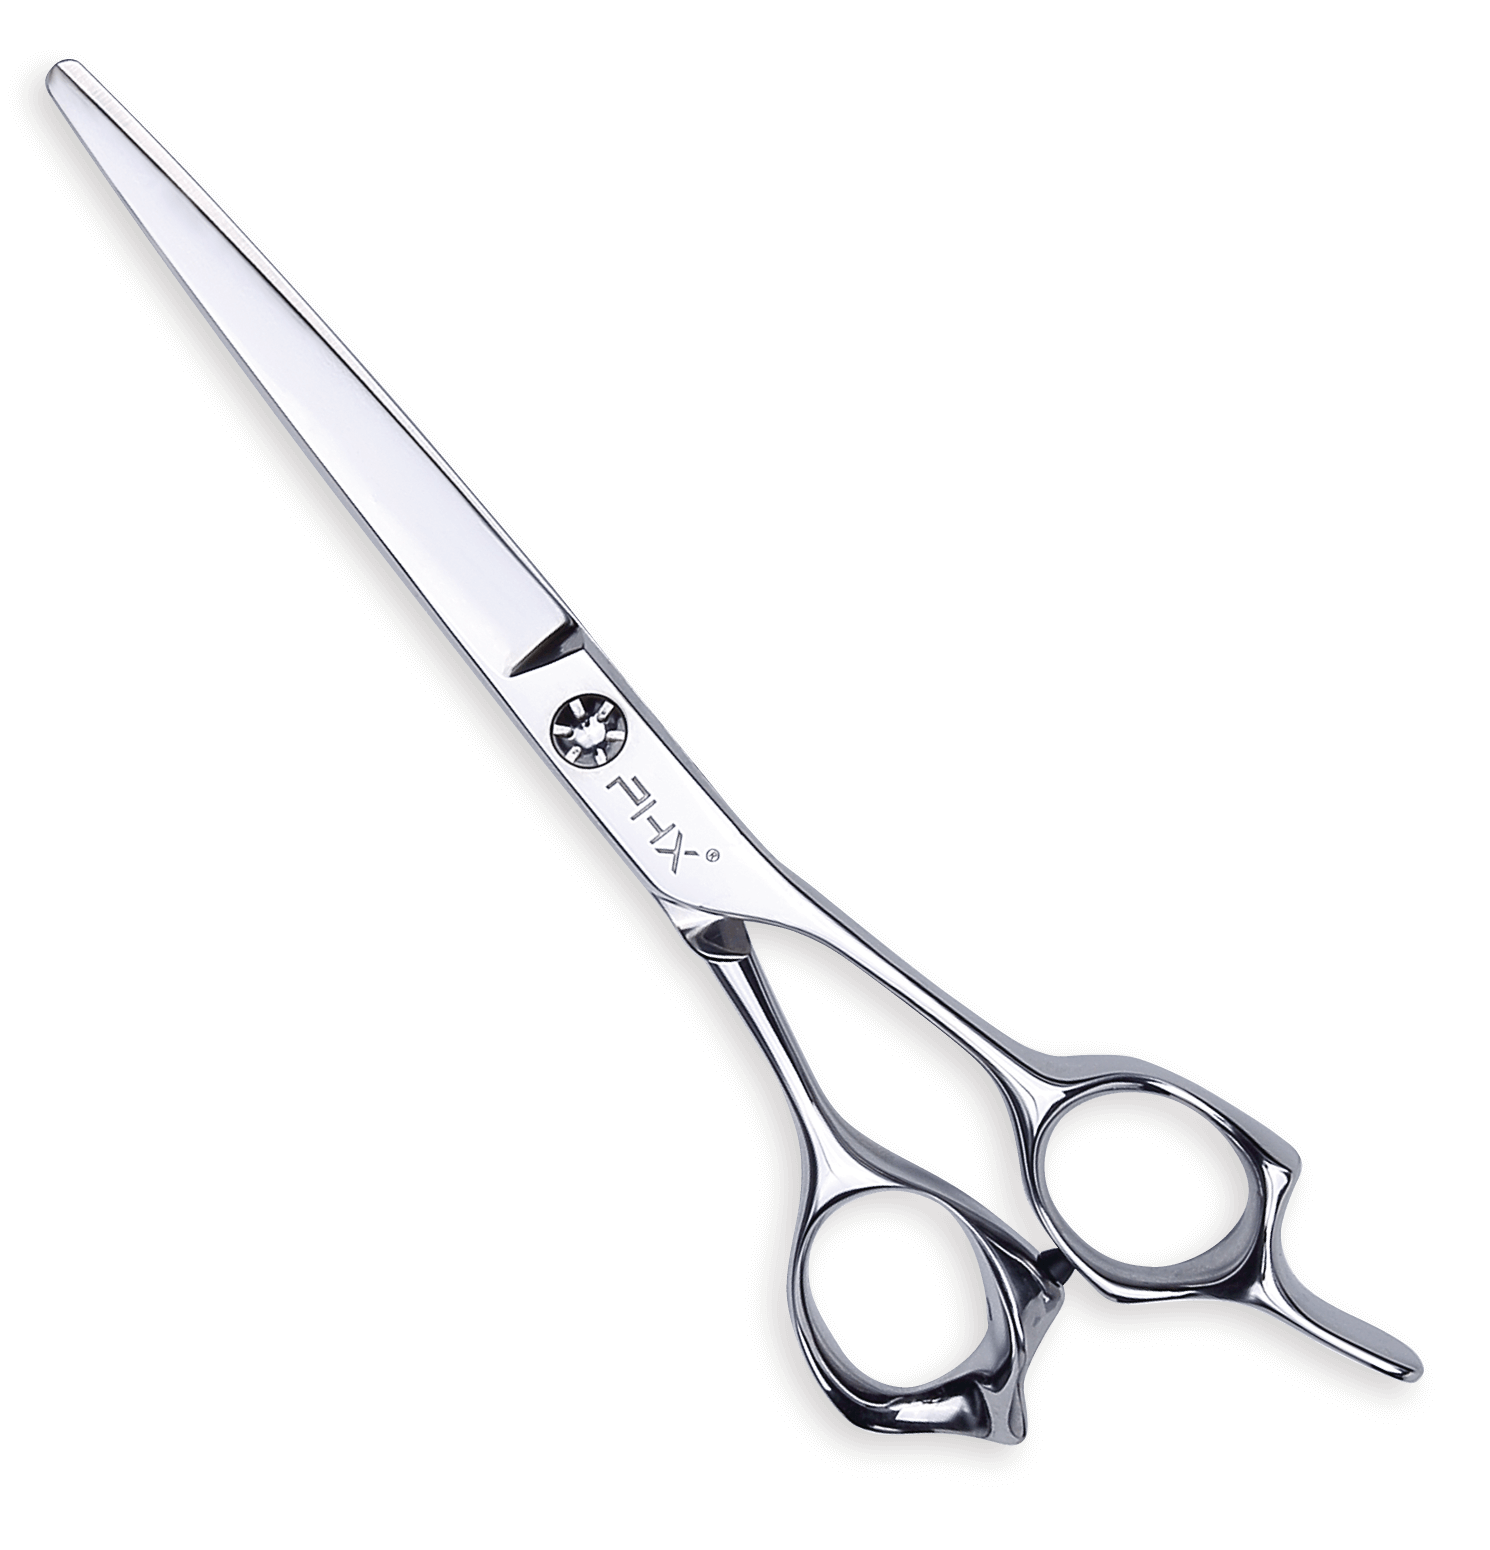 PHX Cut scissors A3